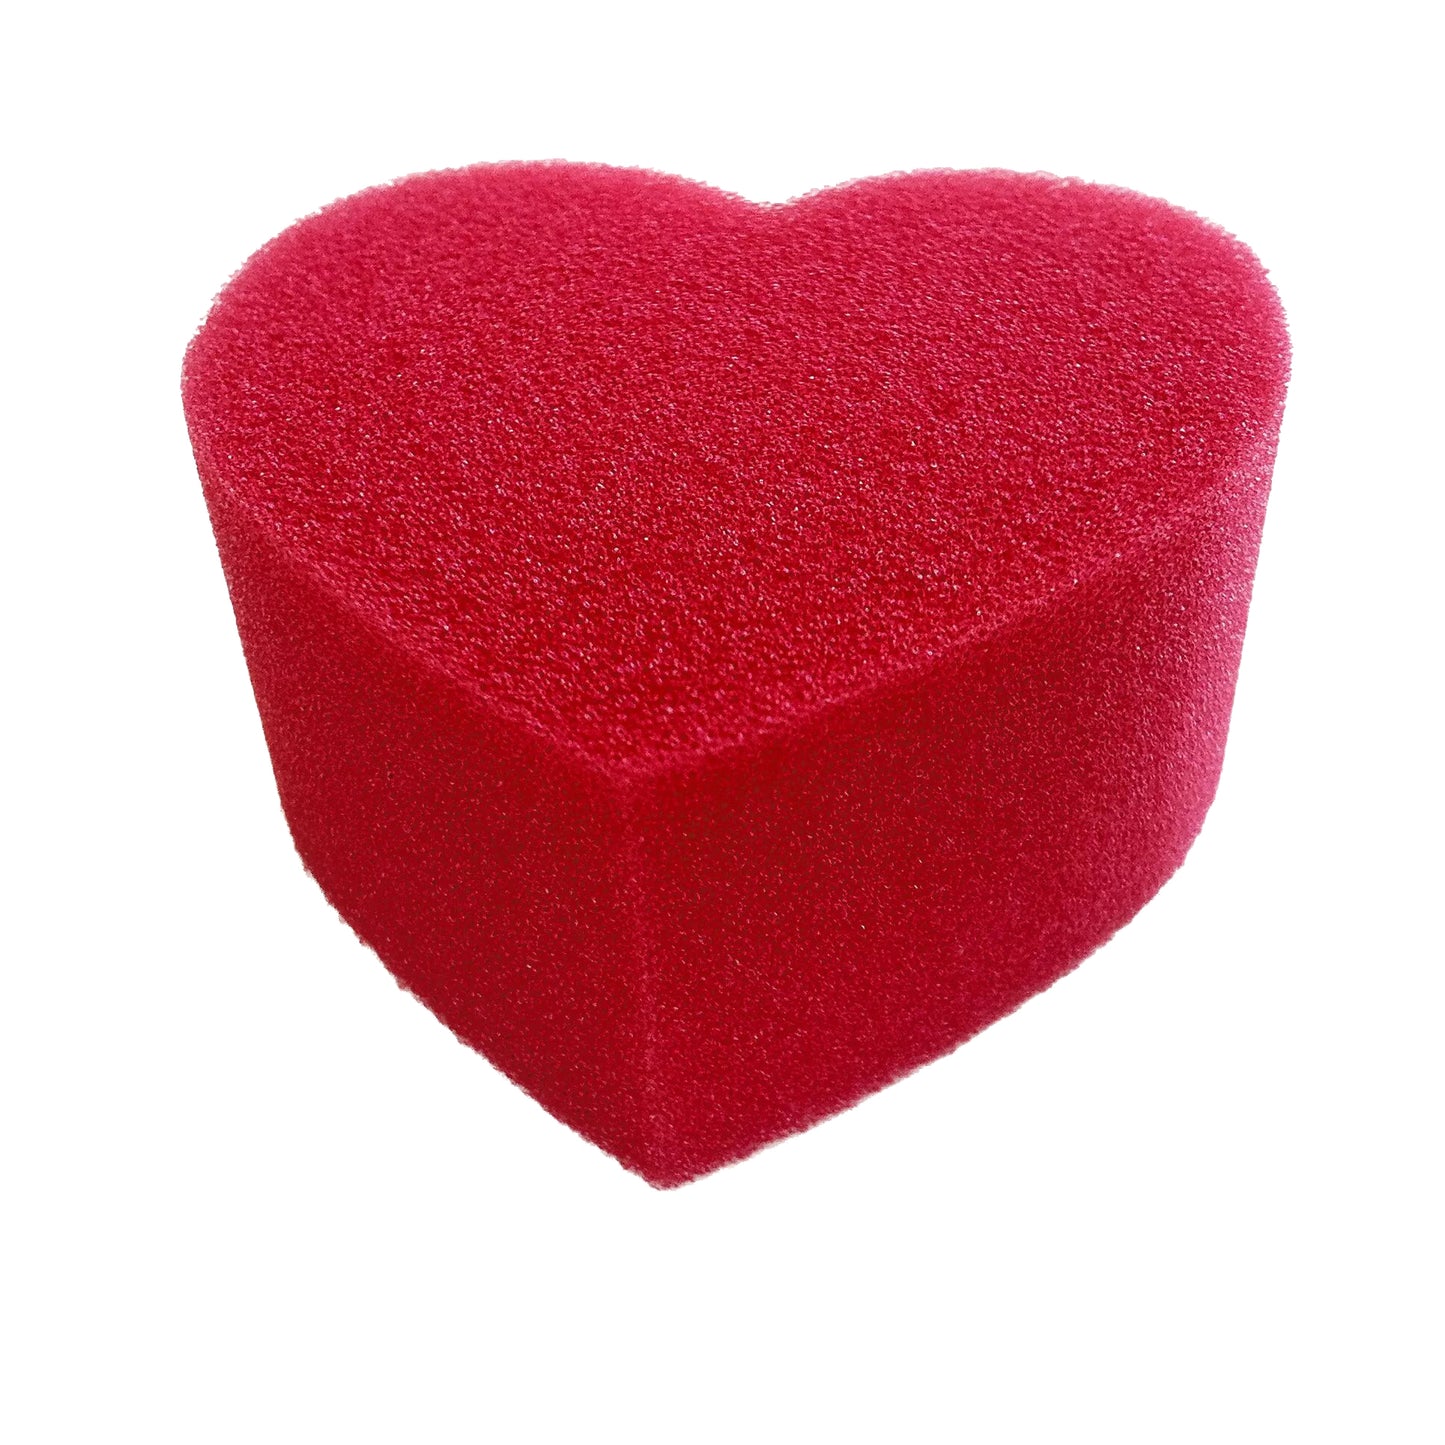 Bodypainting make-up sponge heart